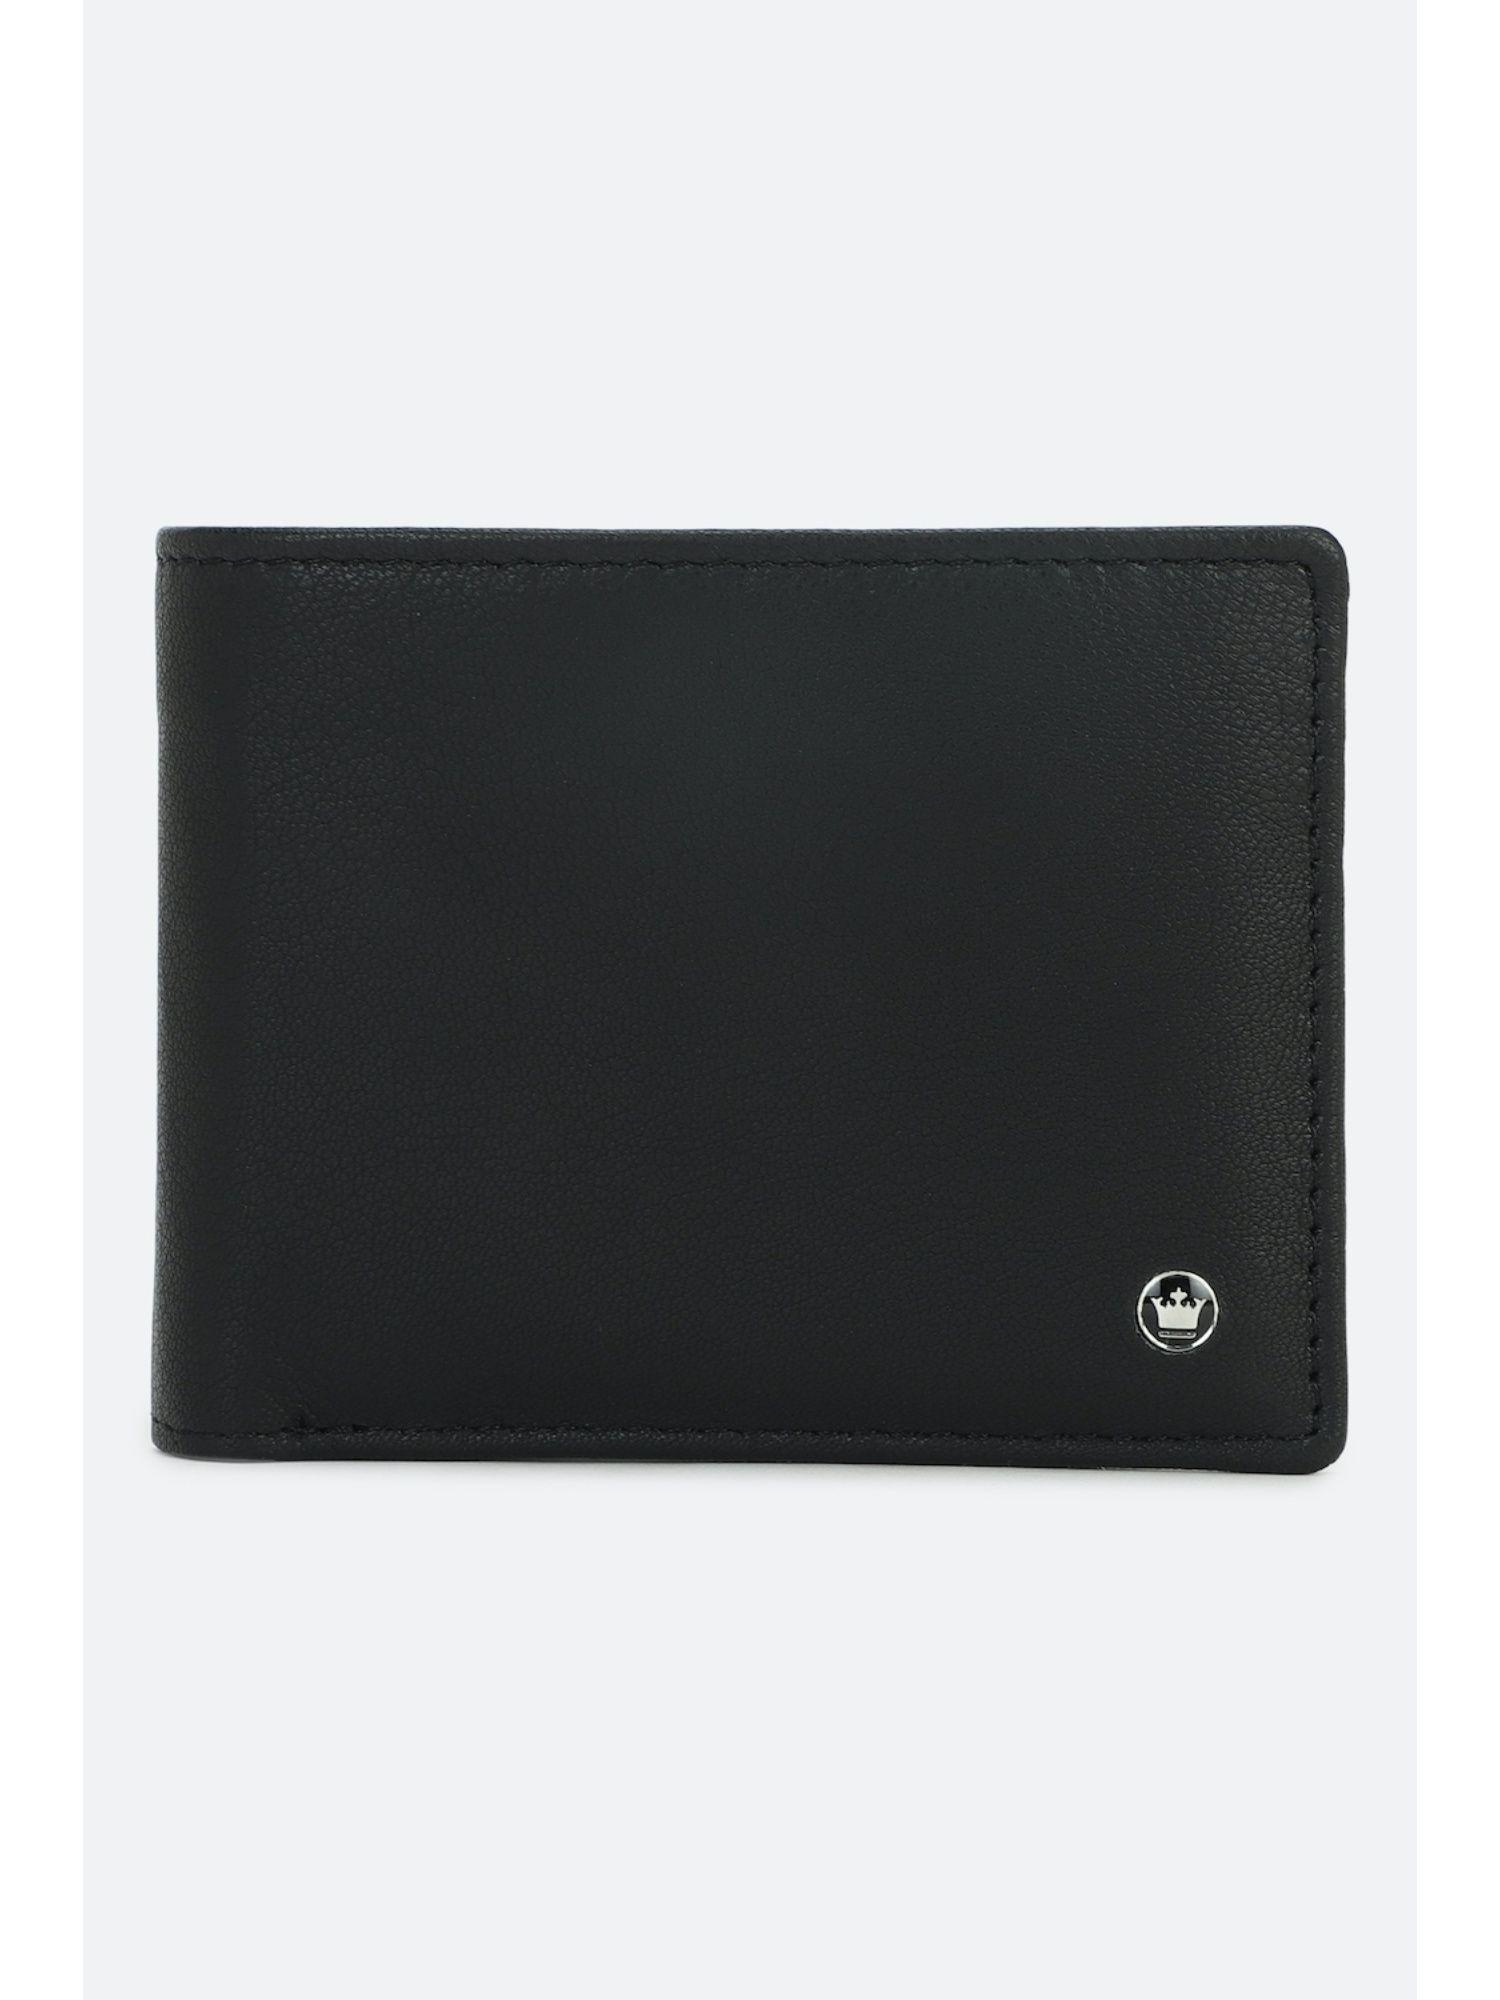 men black solid genuine leather wallet